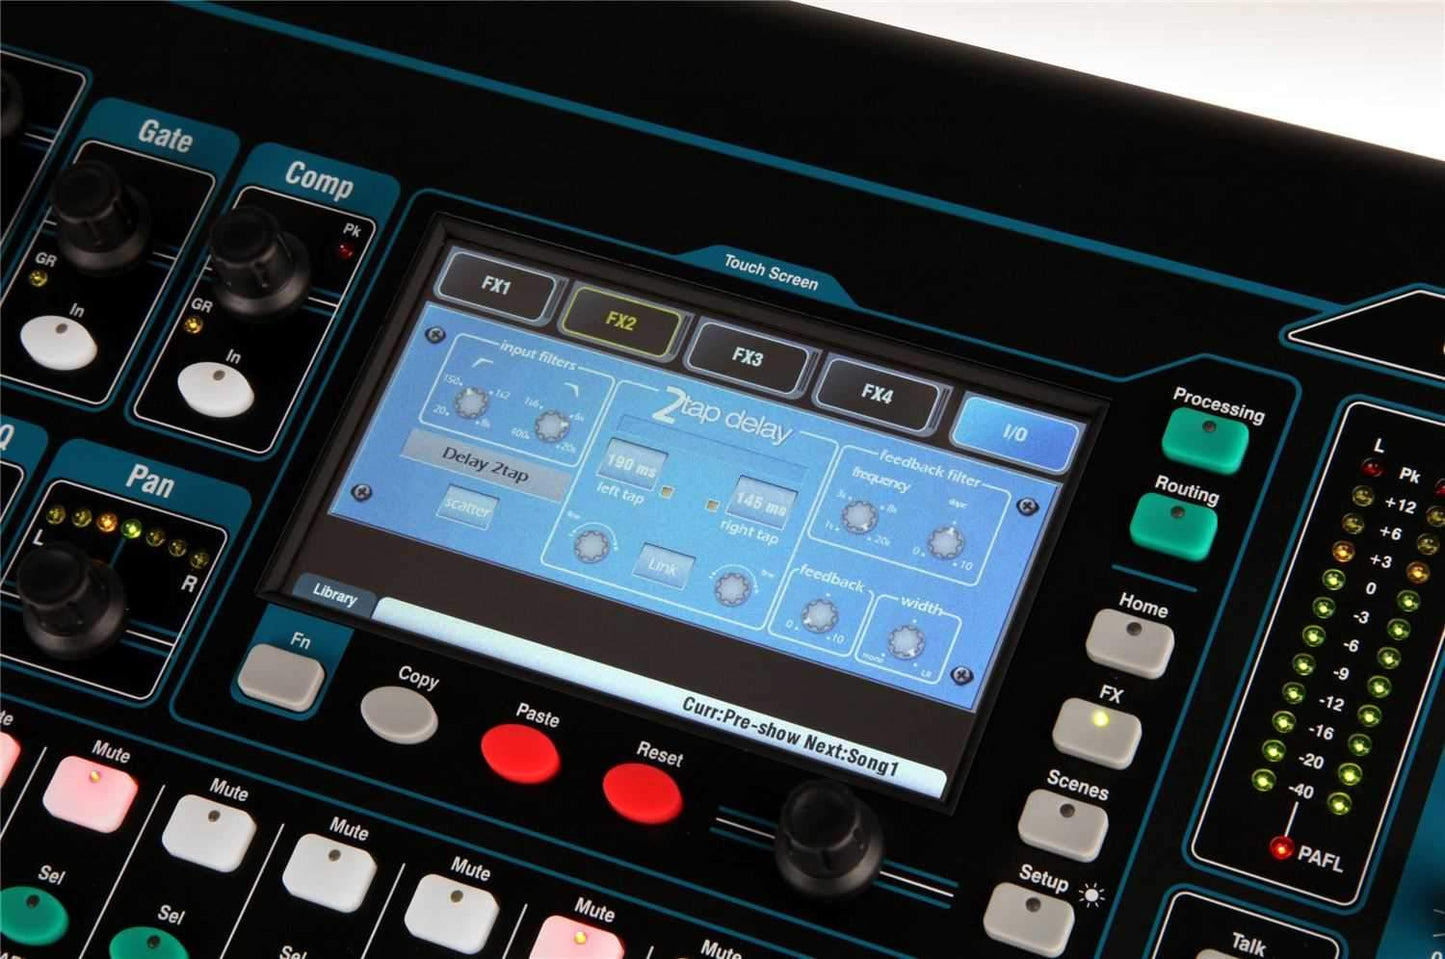 Allen & Heath QU-16 Digital Live Sound PA Mixer - PSSL ProSound and Stage Lighting